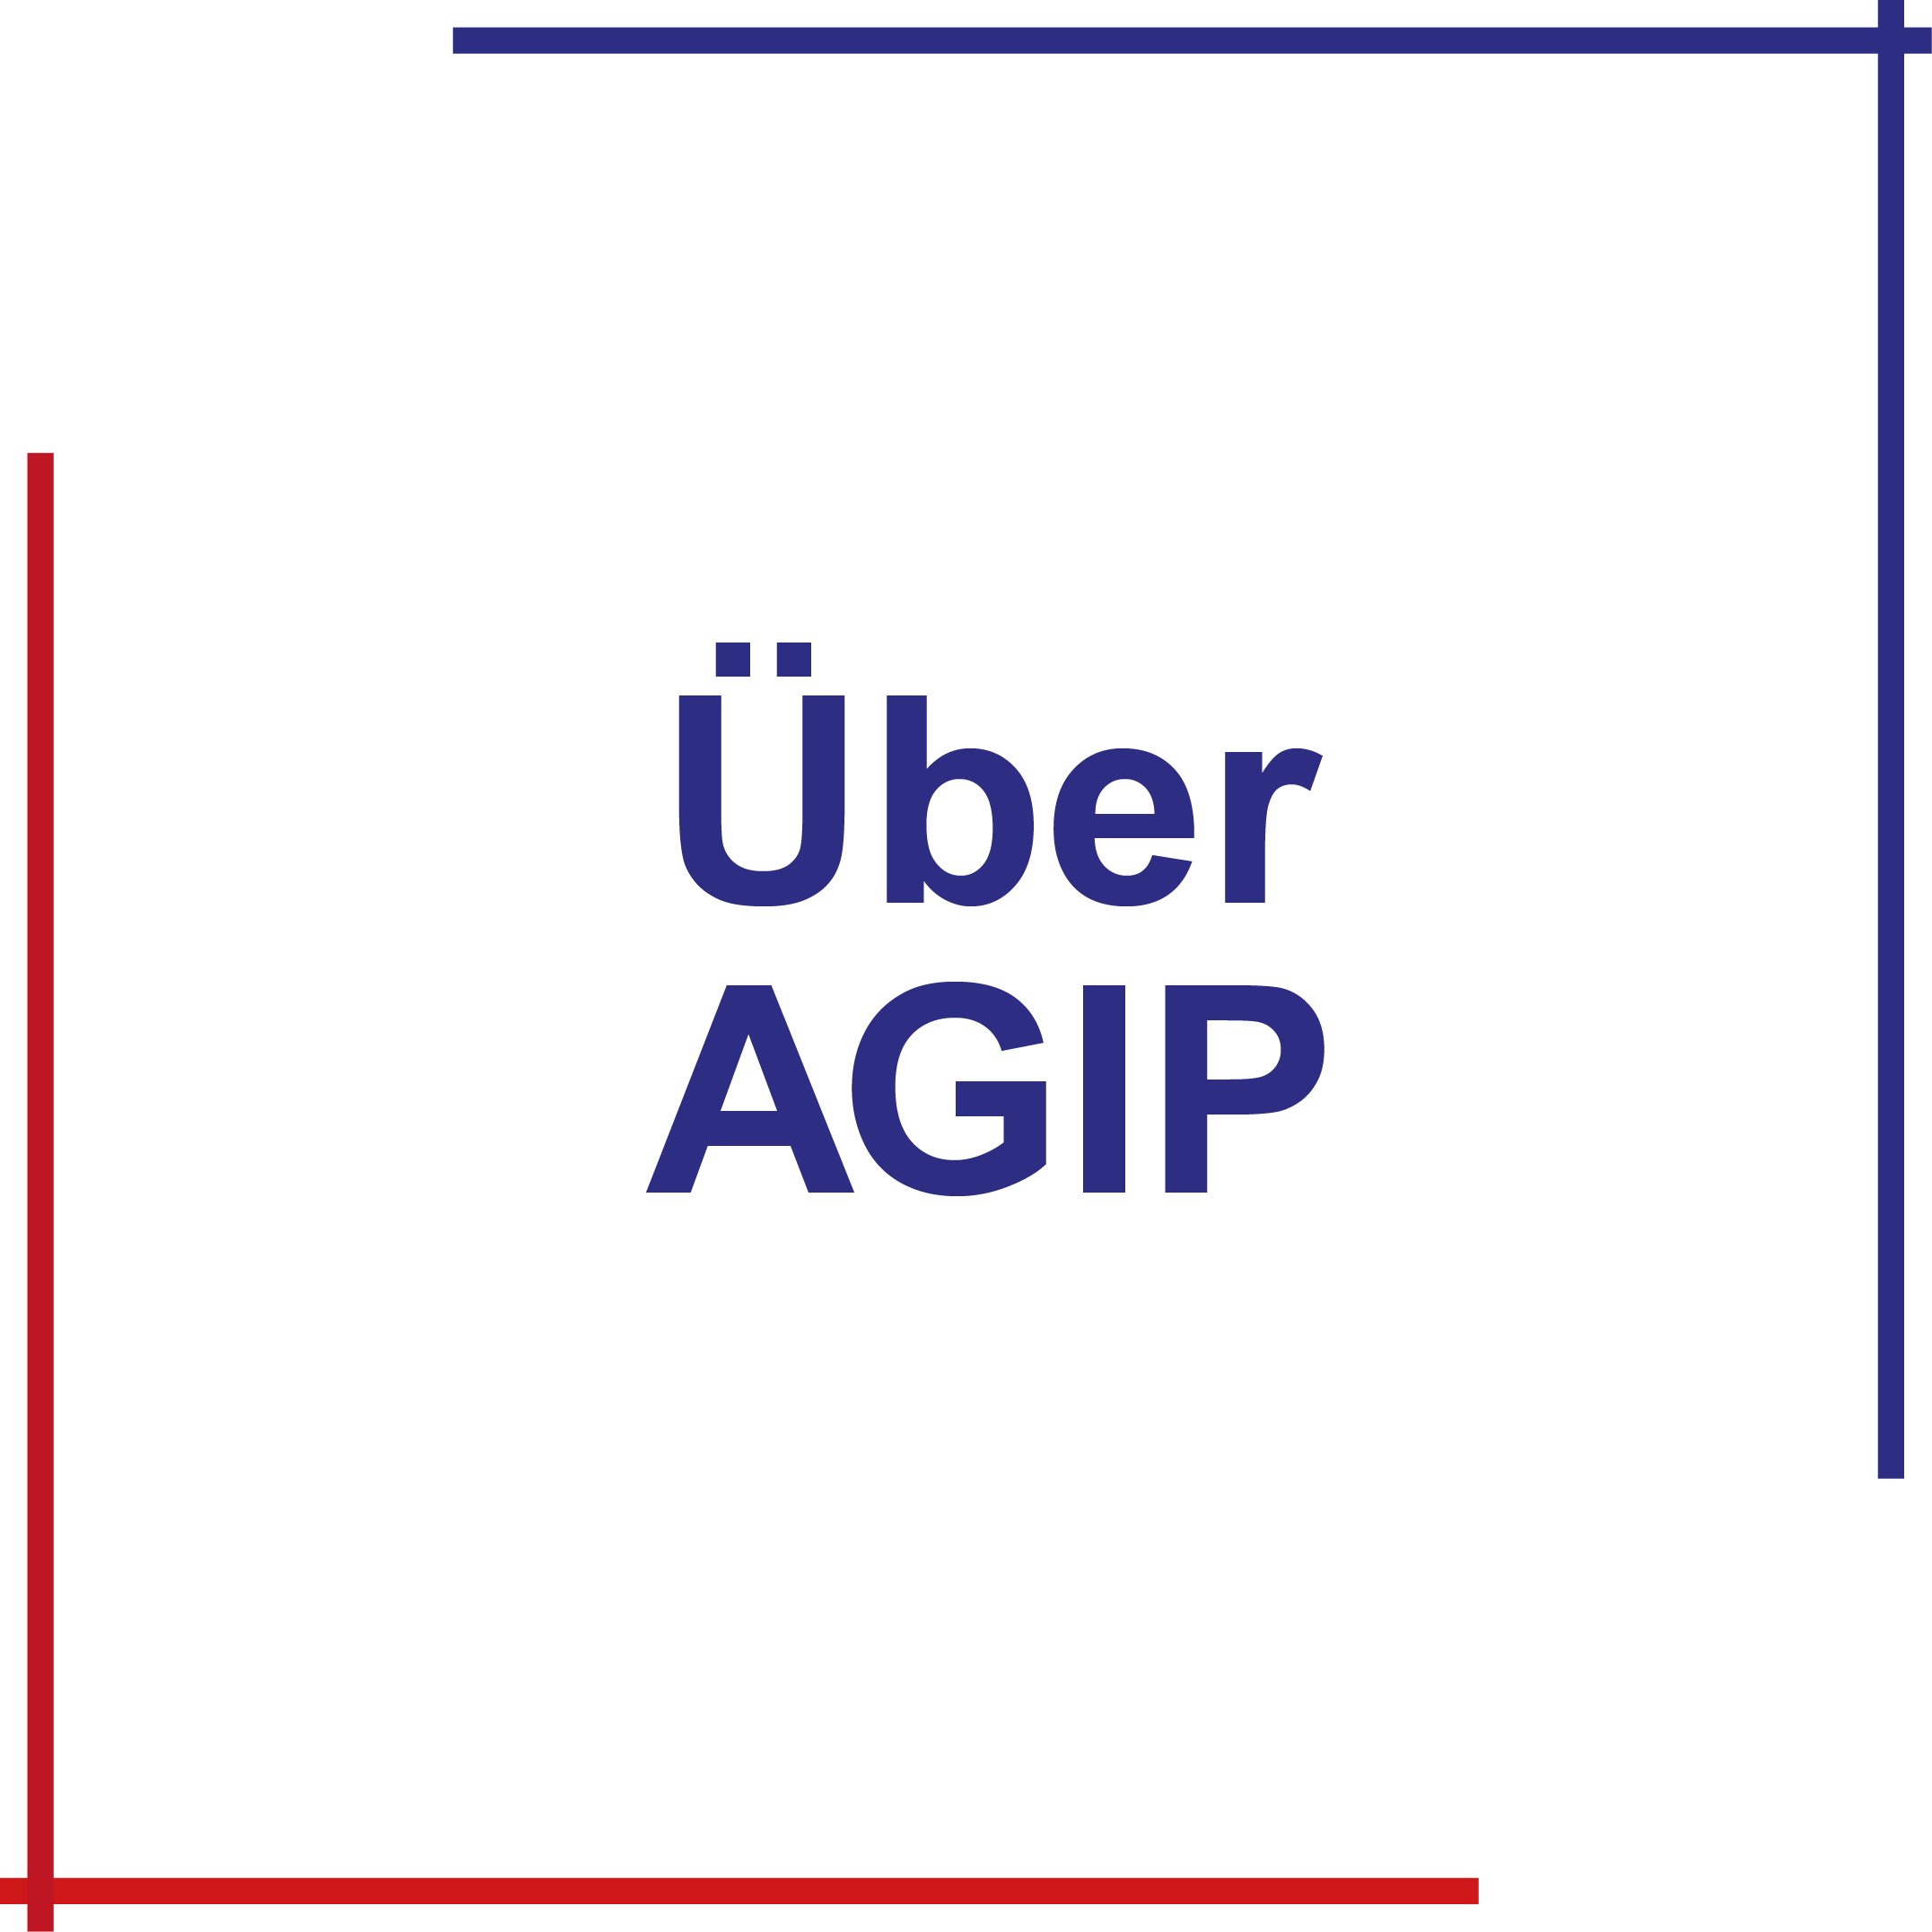 agip logo